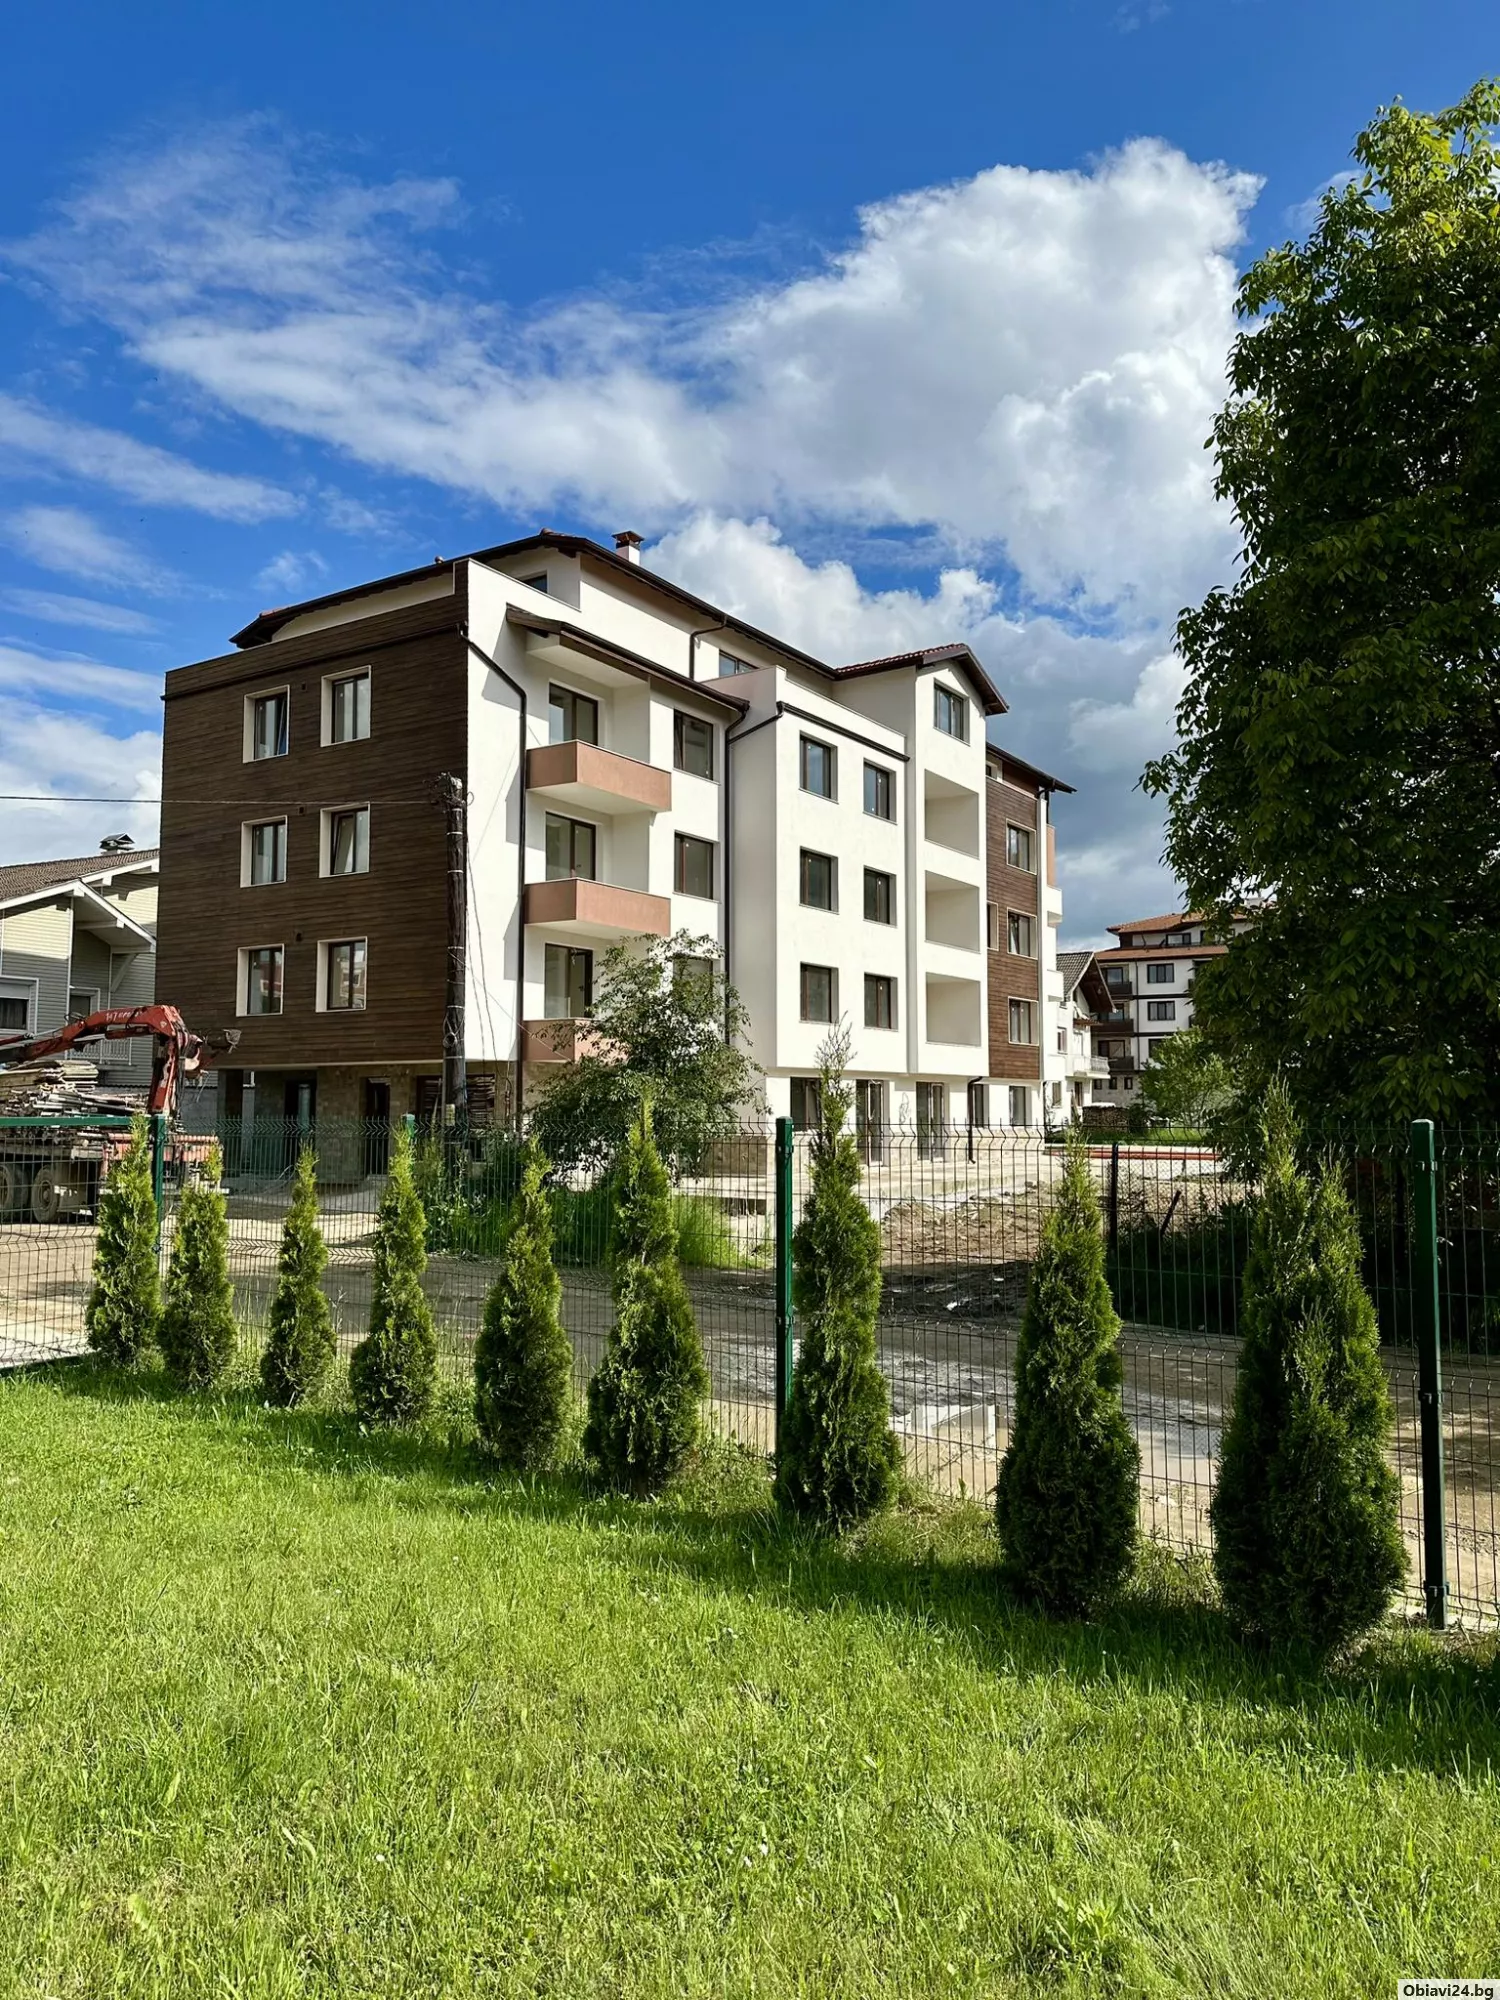 Апартаменти и къщи във Велинград - obiavi24.bg